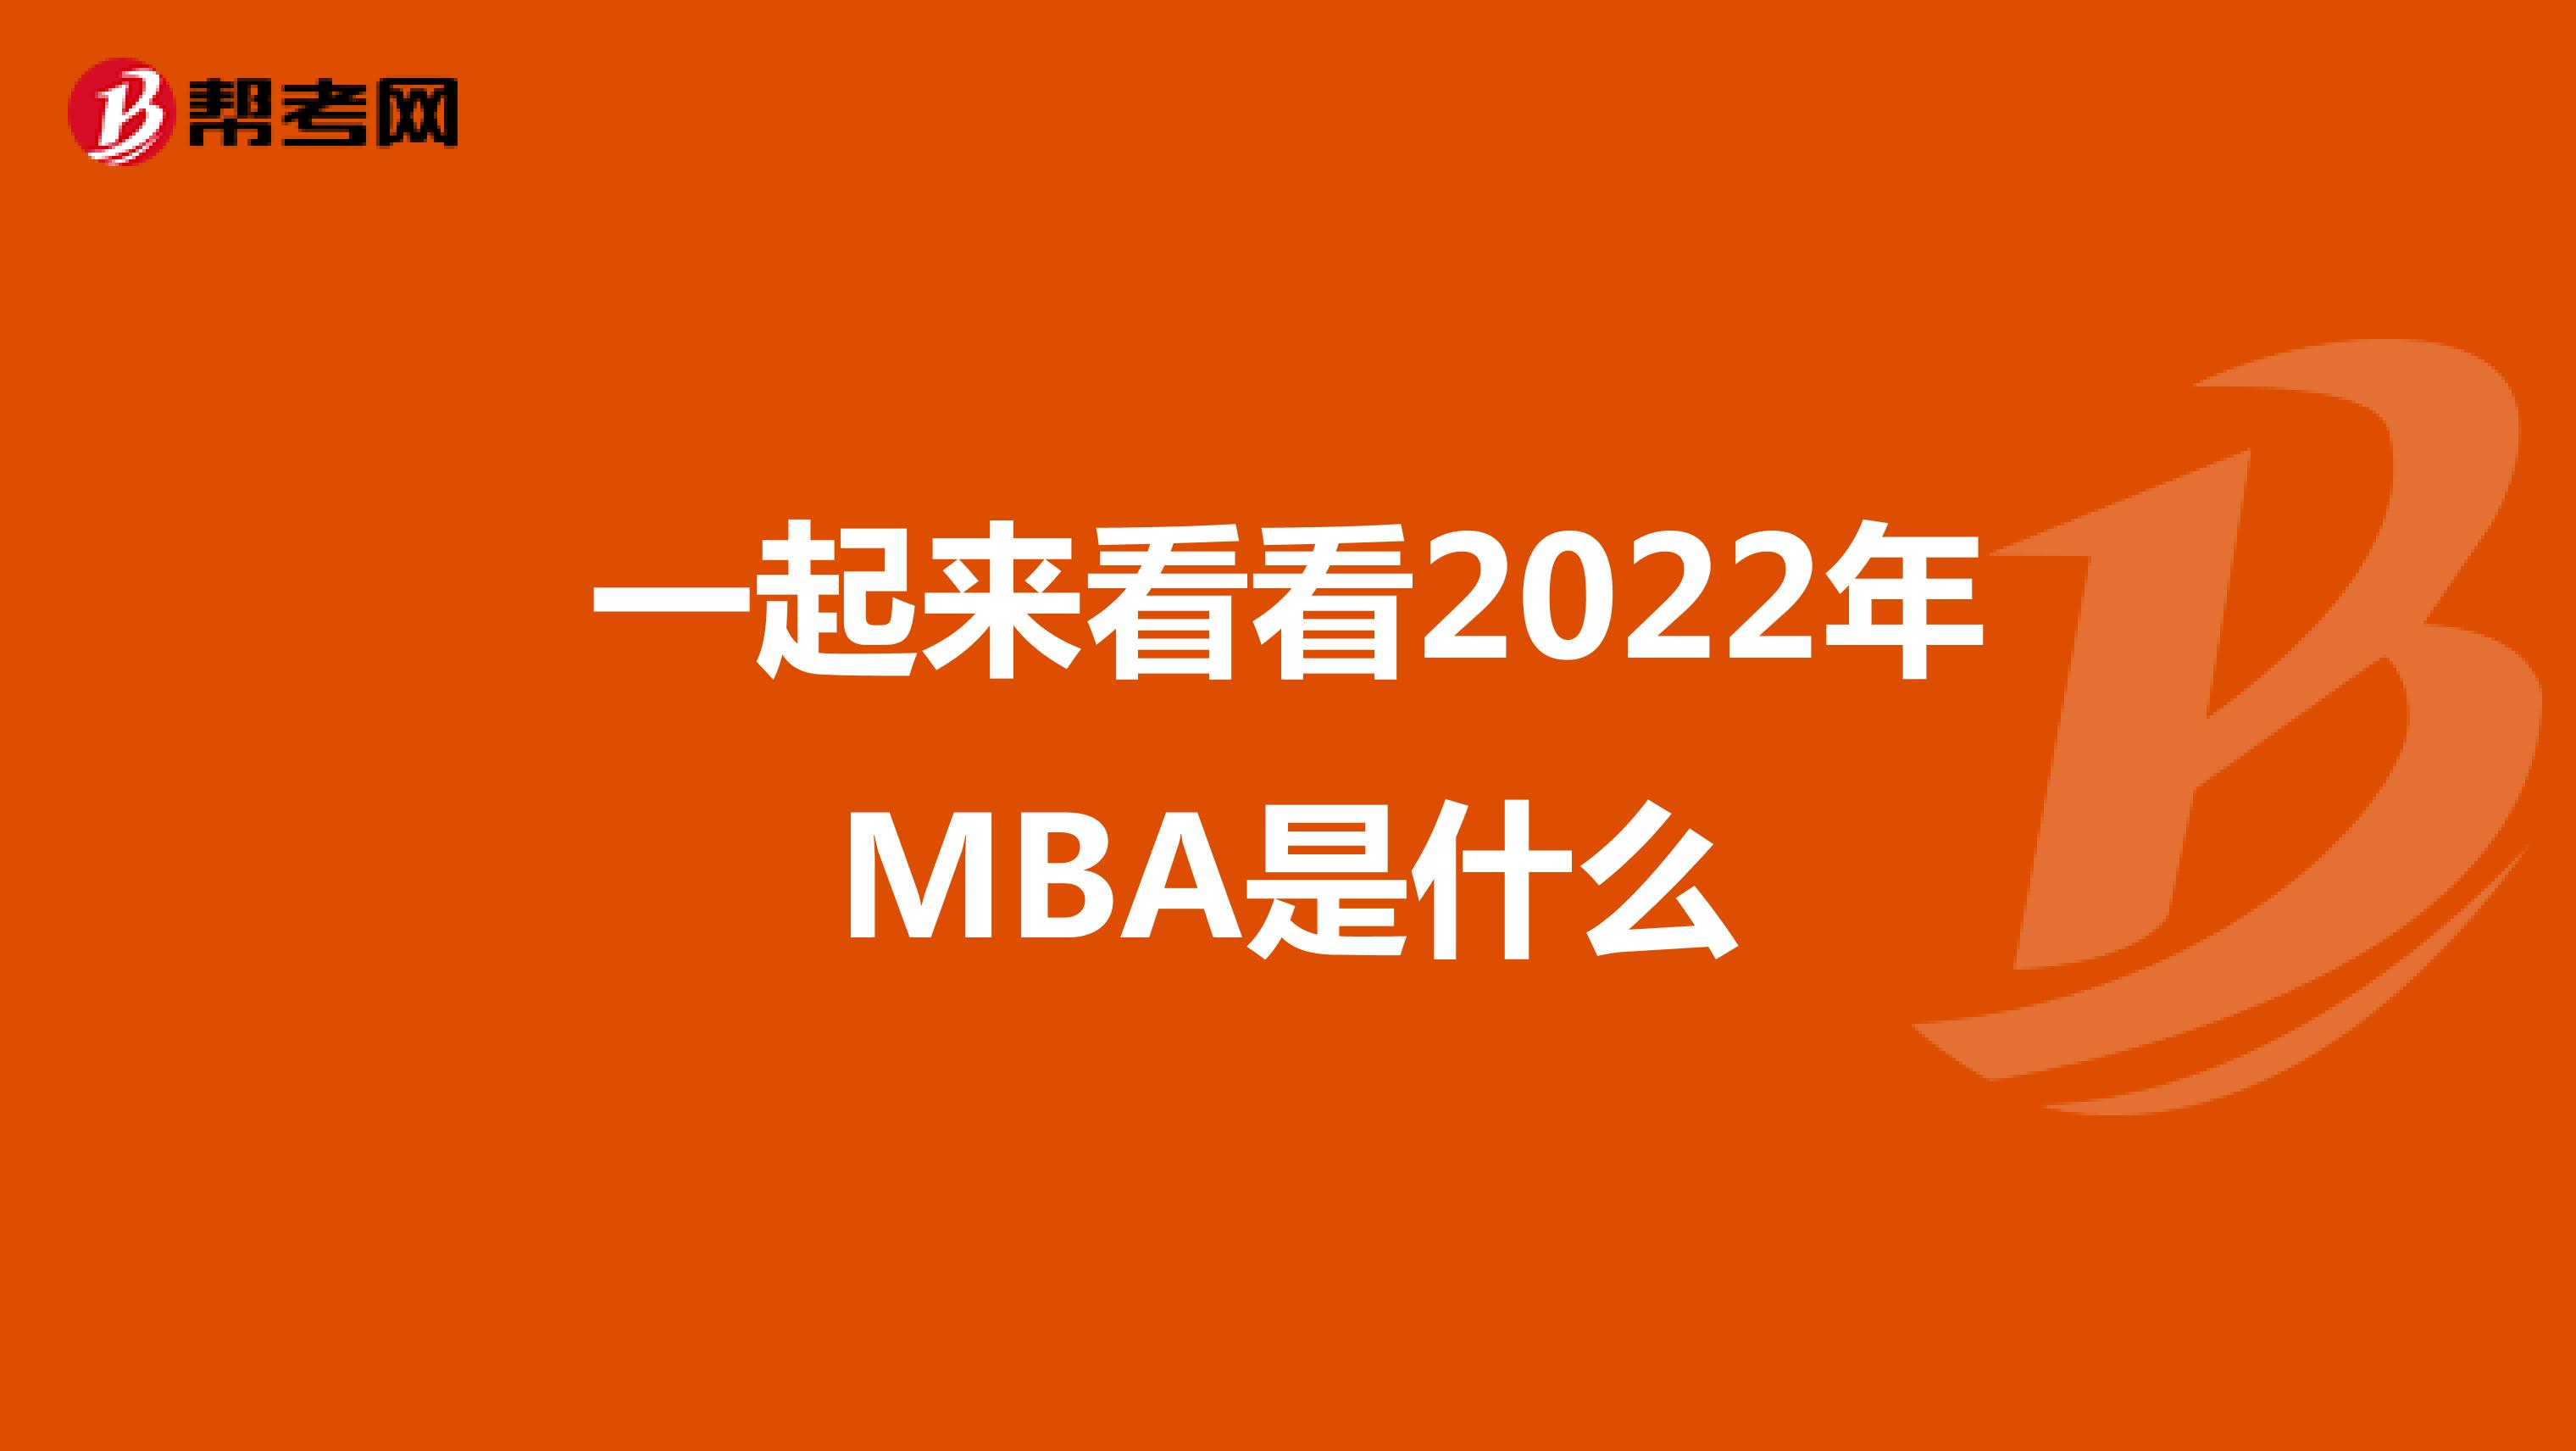  一起来看看2022年MBA是什么